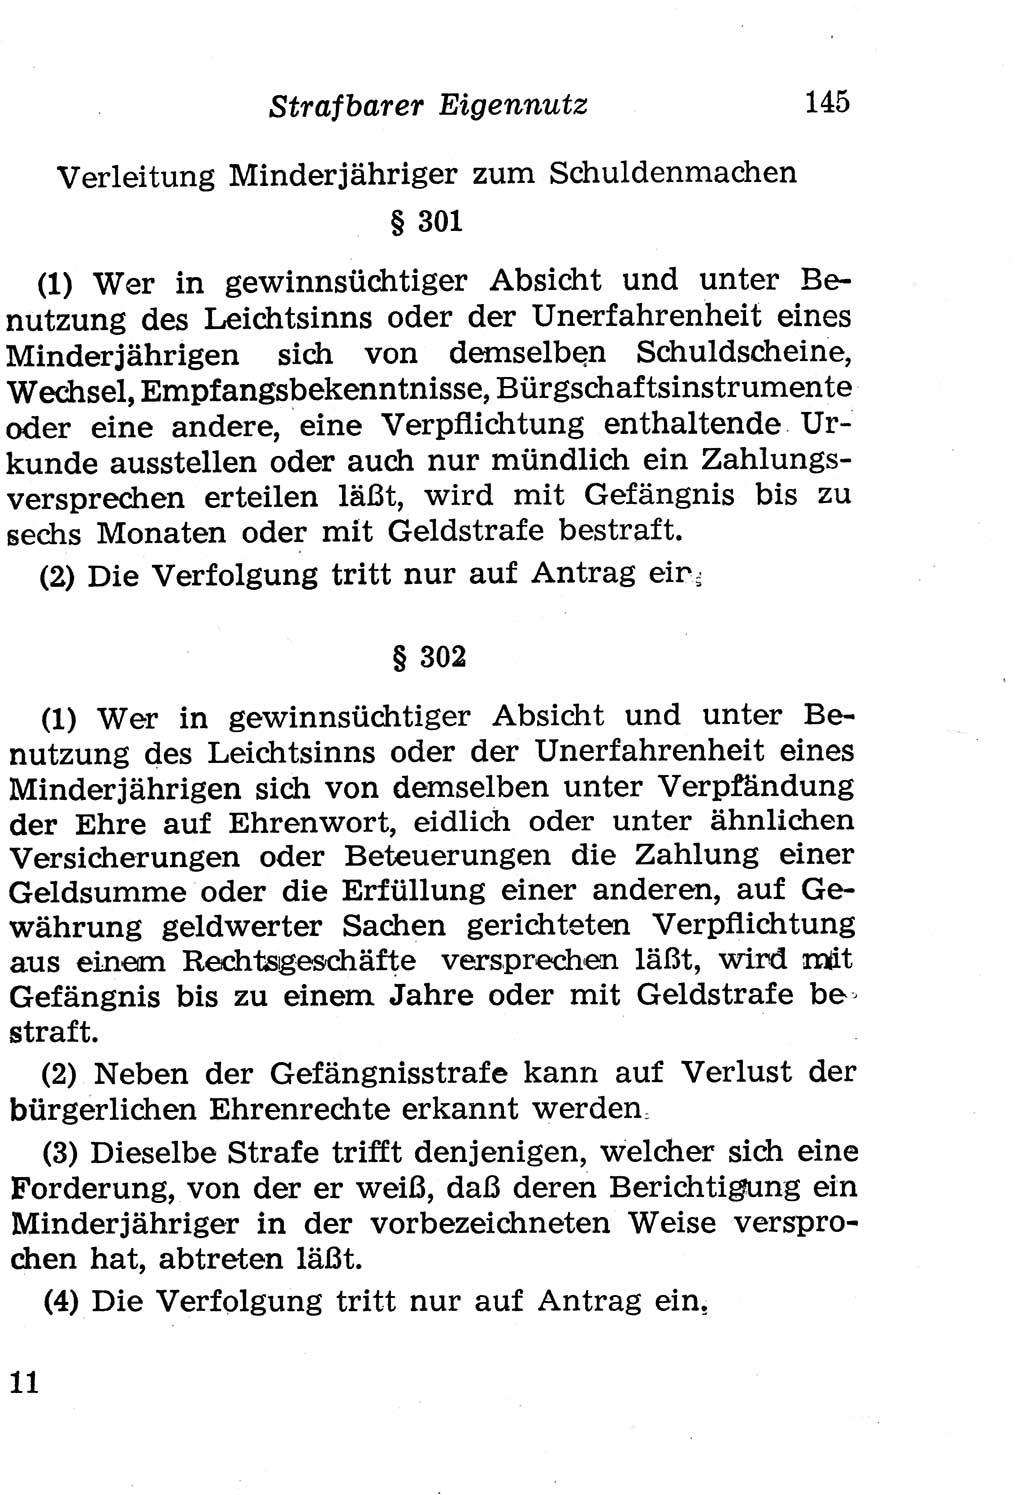 Strafgesetzbuch (StGB) und andere Strafgesetze [Deutsche Demokratische Republik (DDR)] 1958, Seite 145 (StGB Strafges. DDR 1958, S. 145)